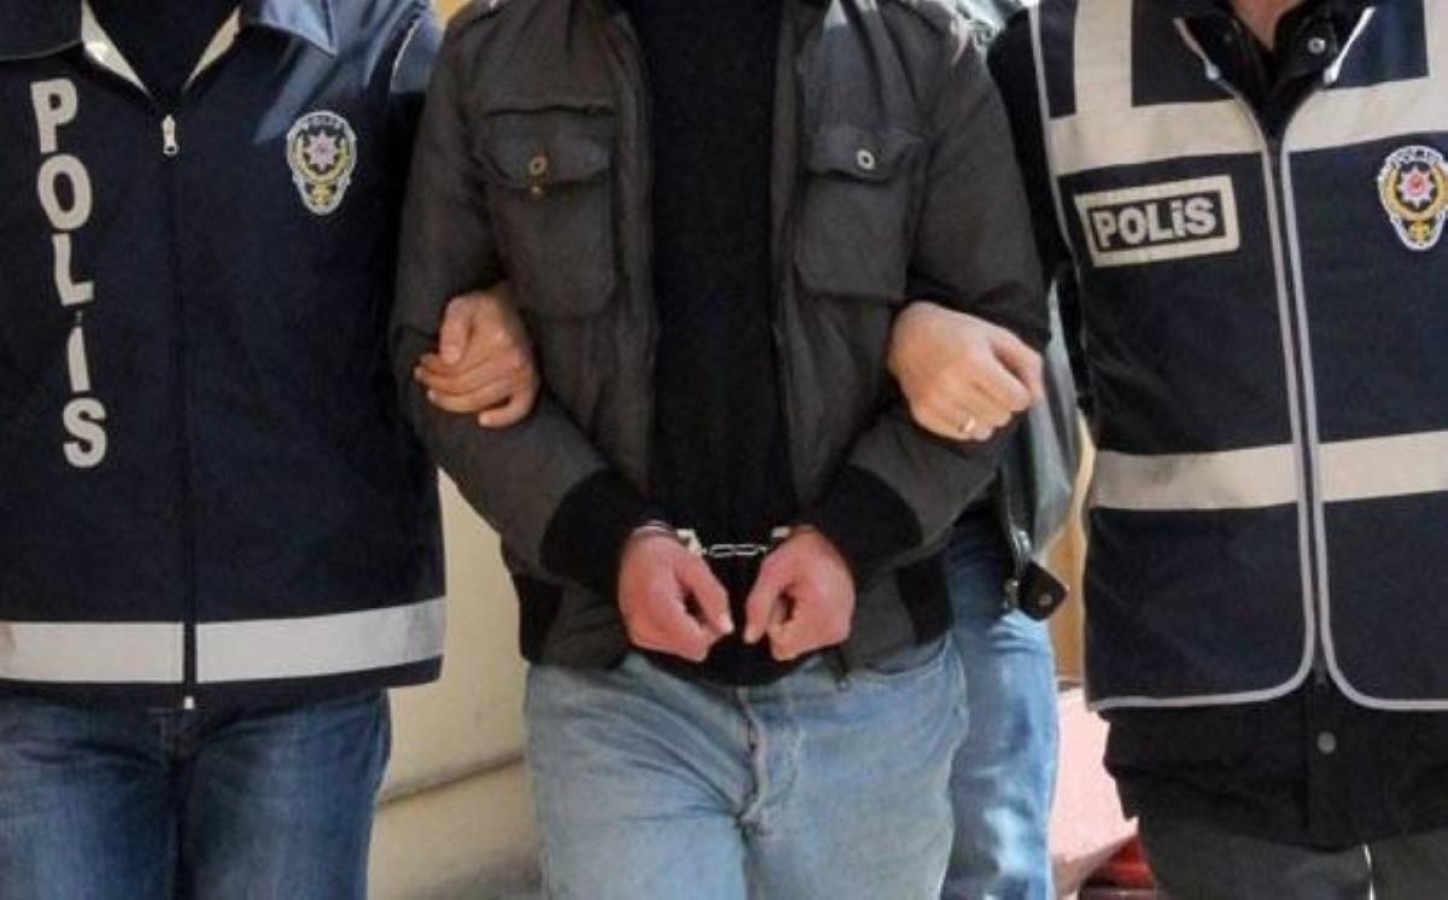 Urfa’da terör operasyonunda 4 gözaltı